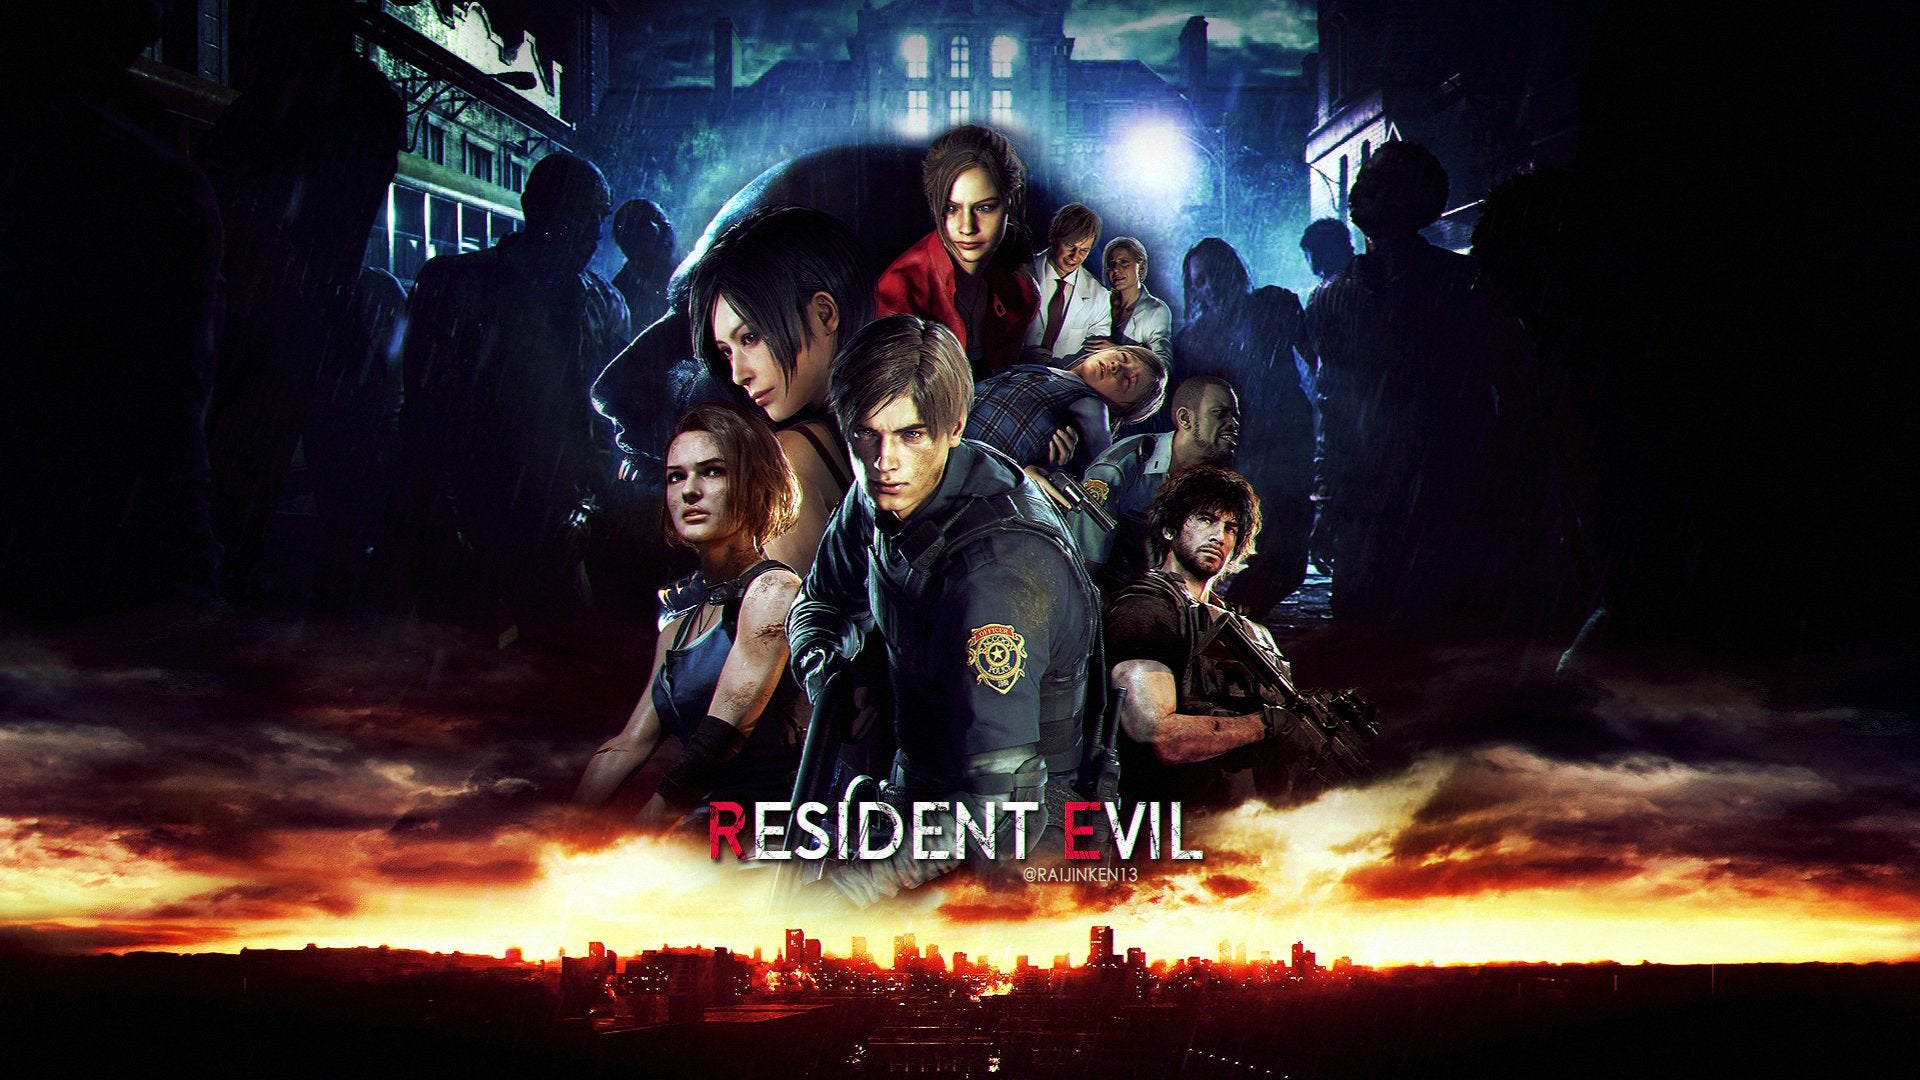 Resident Evil 2 poster